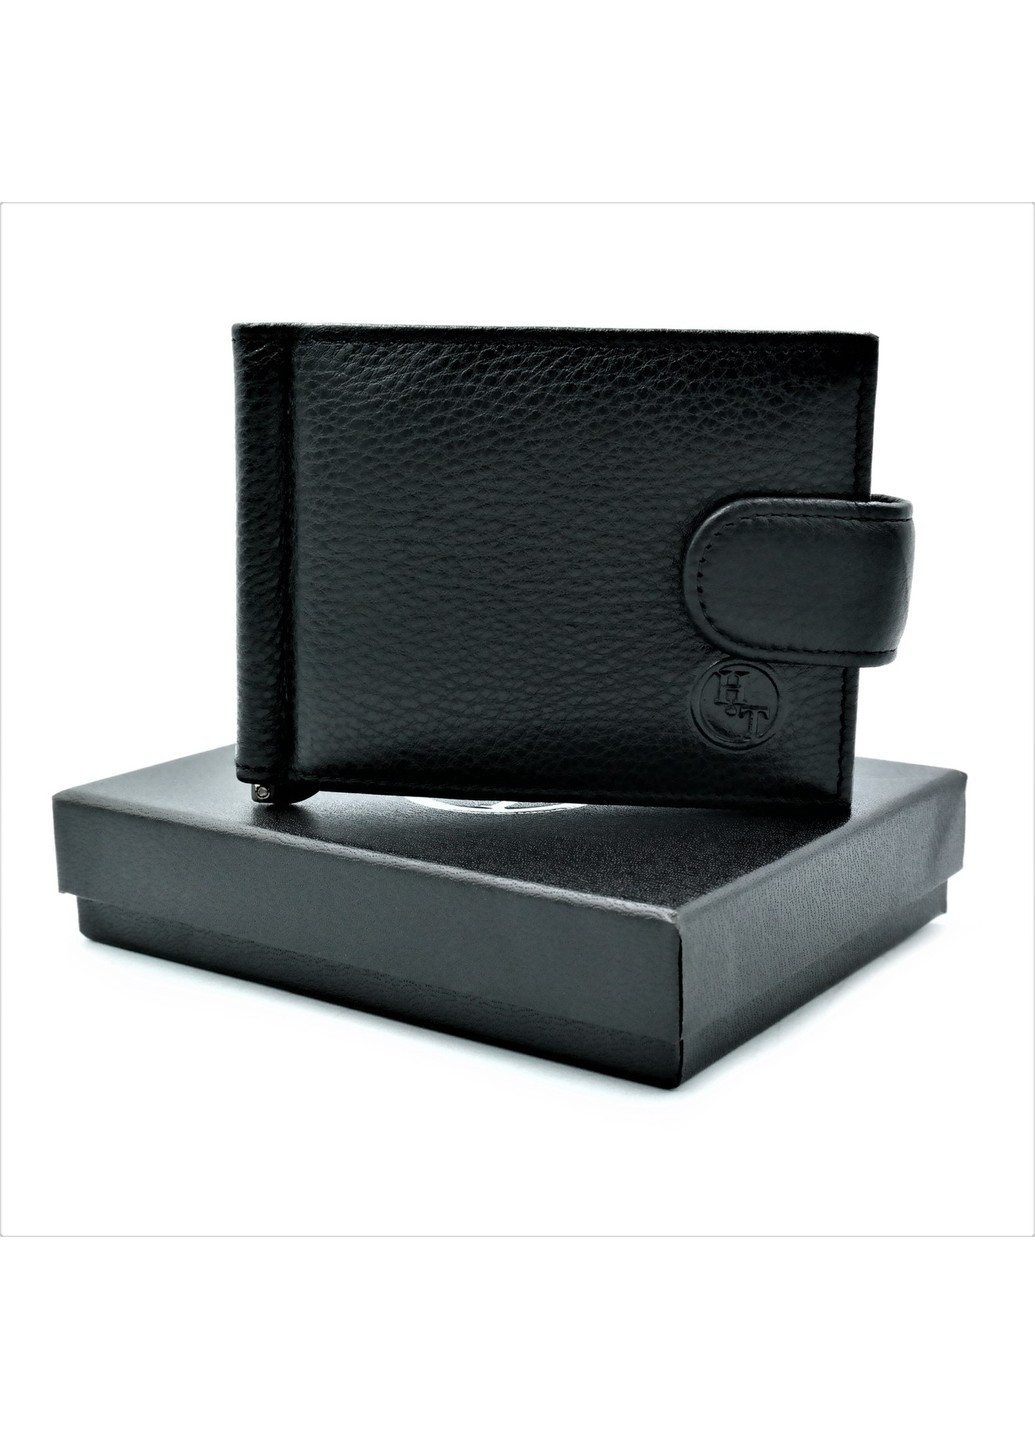 Мужской кожаный кошелек-зажим 11 х 8 х 1,5 см Черный wtro-nw-163-33-03 Weatro (272596093)